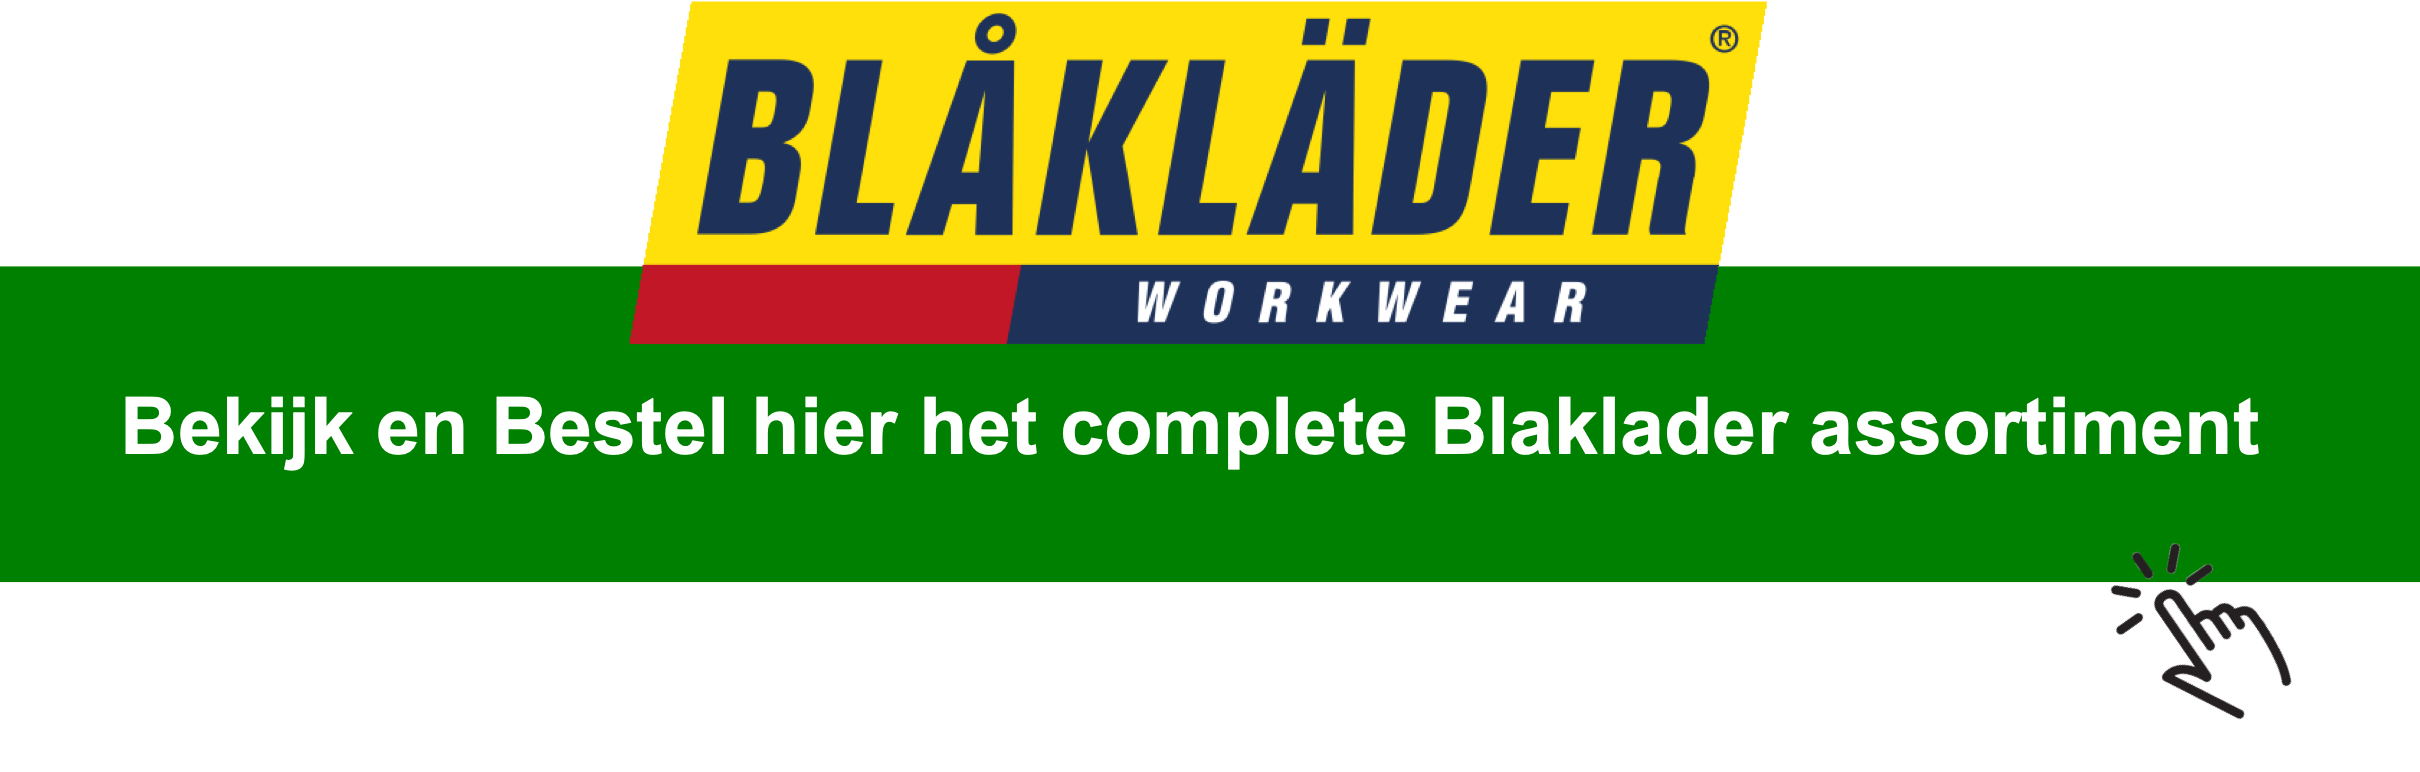 Klik hier om alvast een blik te werpen op het assortiment van Blaklader en meteen een keuze te maken.